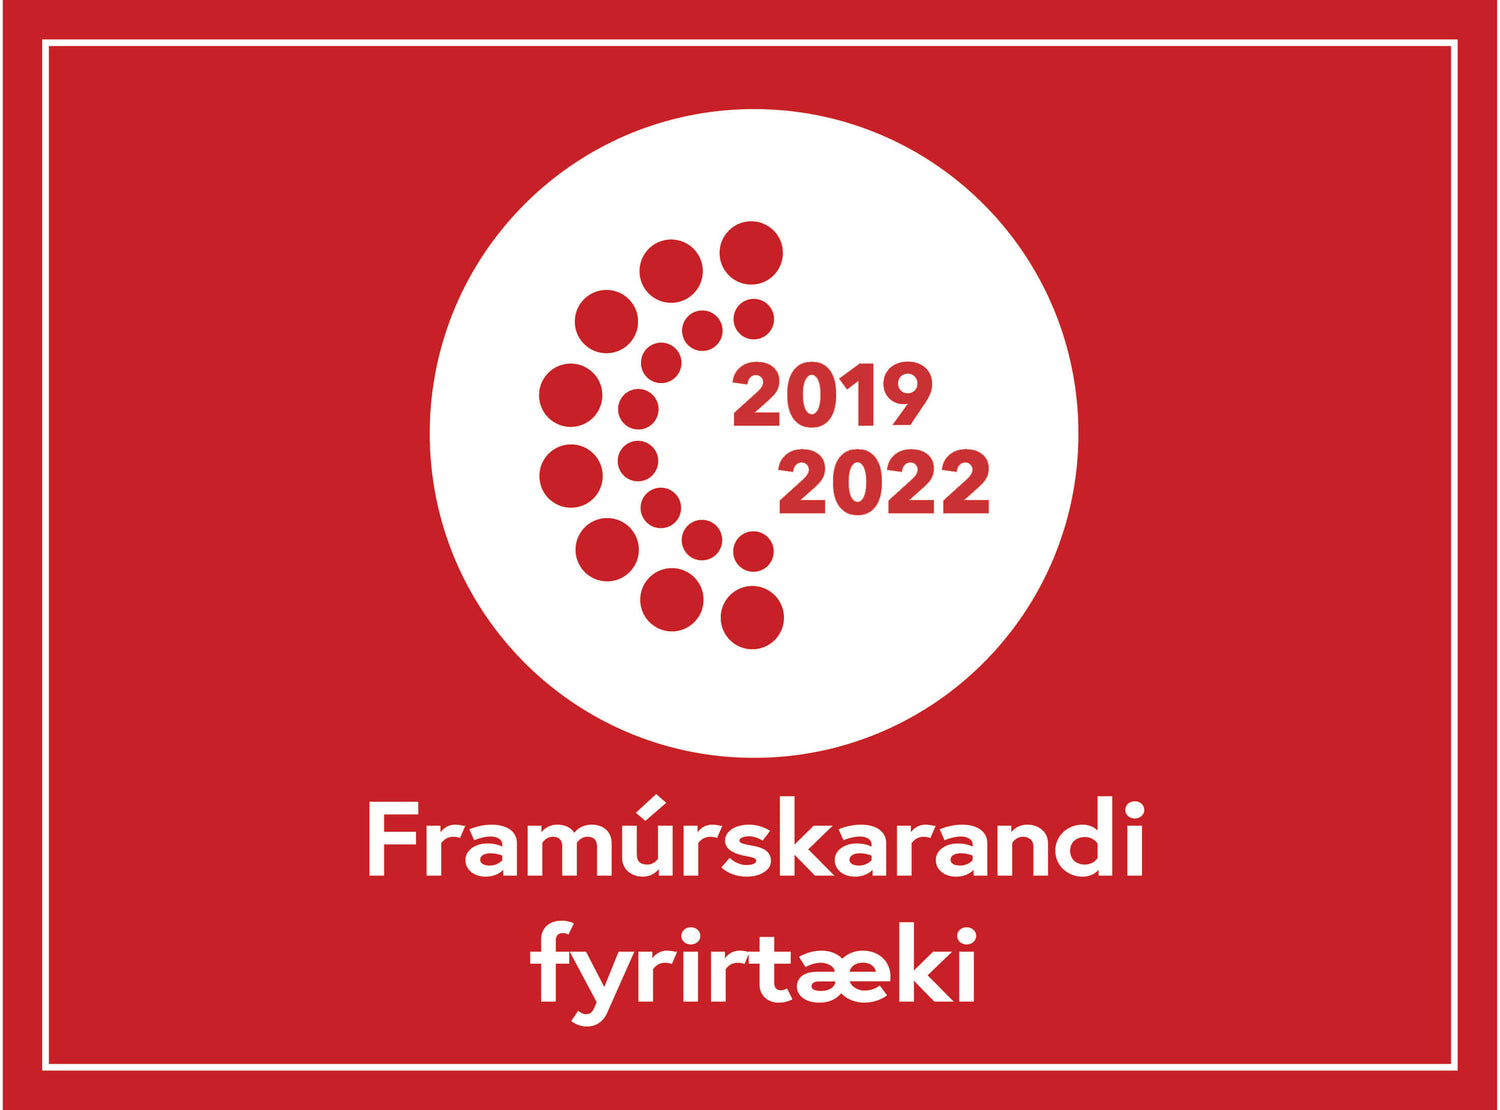 KAPP er Framúrskarandi fyrirtæki 2019, 2020, 2021 og 2022